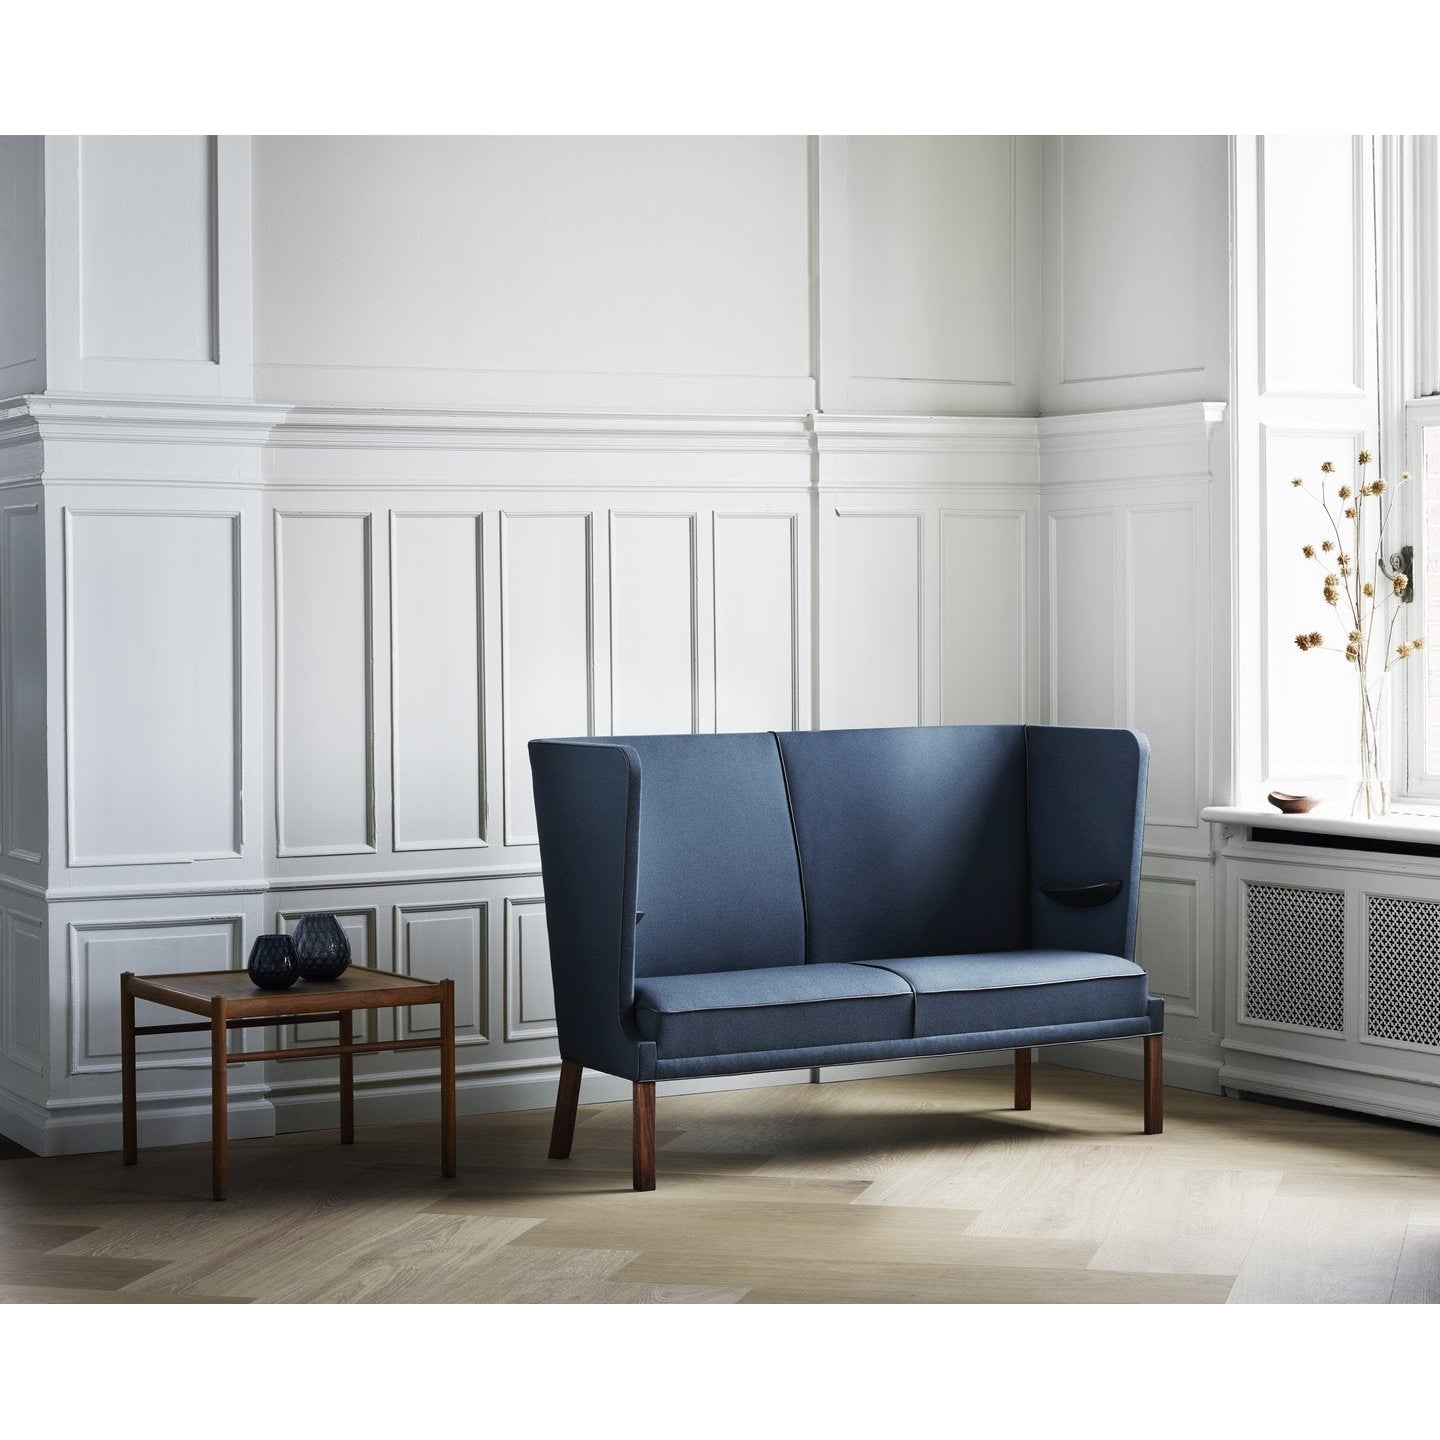 Carl Hansen Fh436 Coupé Sofa, Oiled Walnut/Blue Fabric